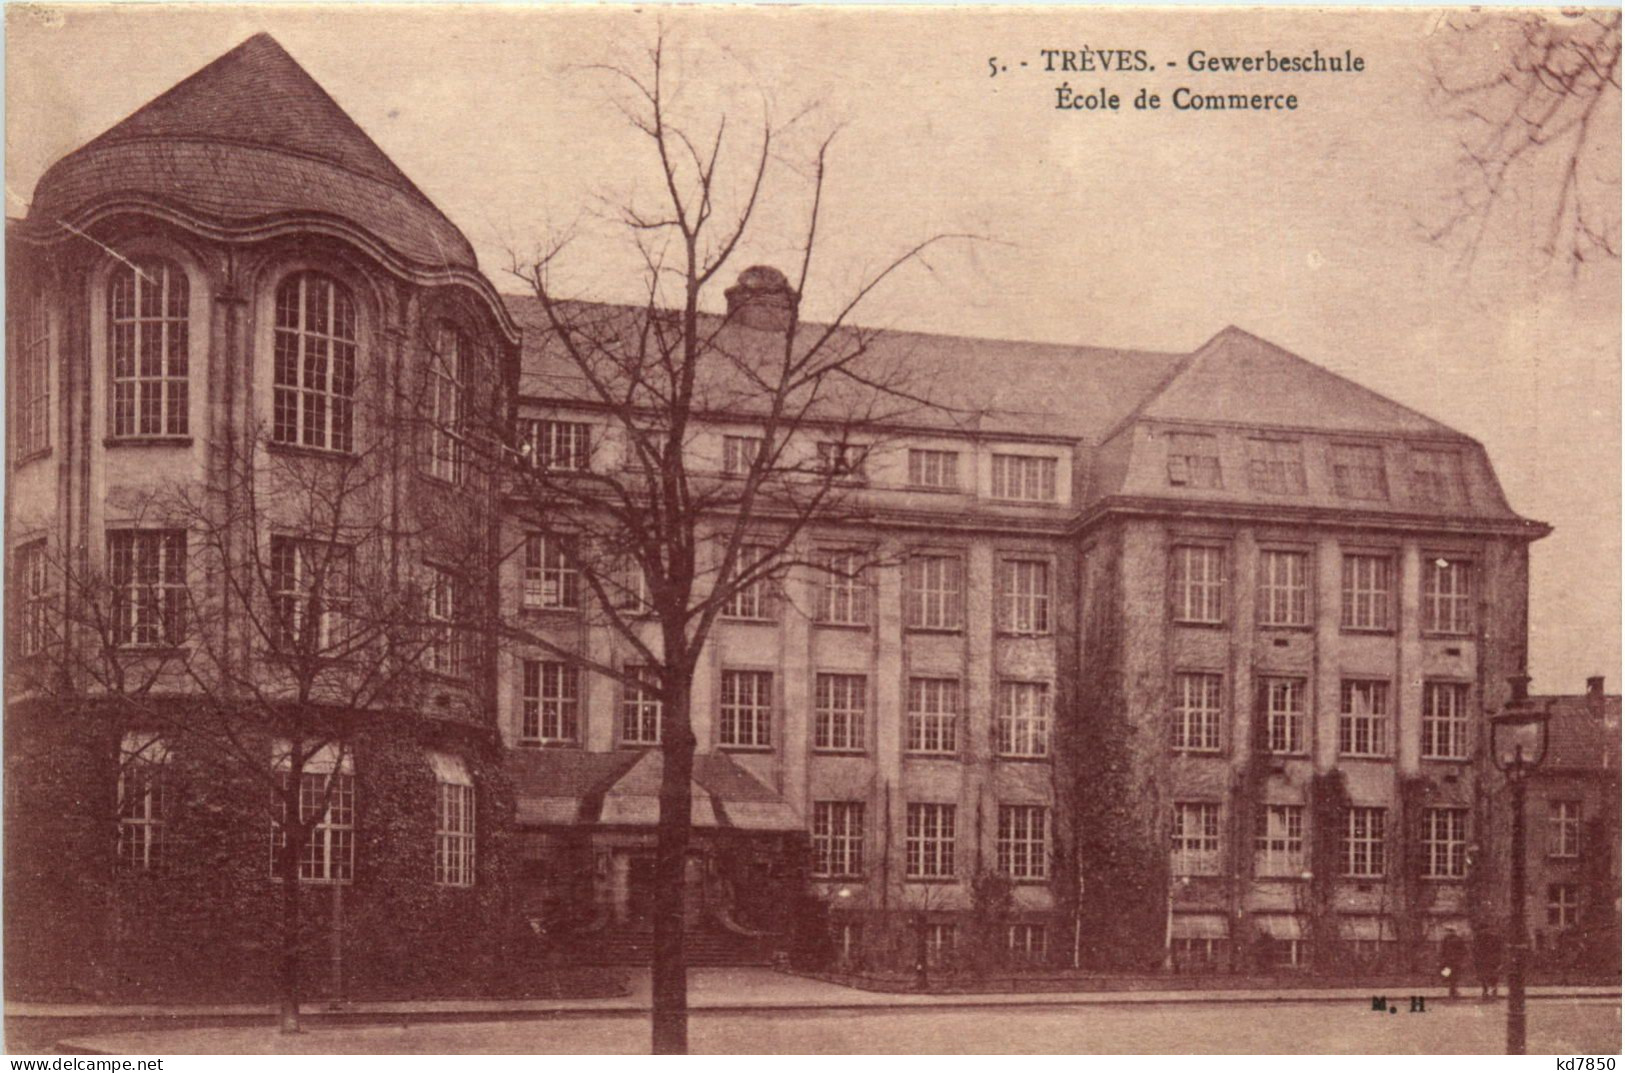 Treves, Gewerbeschule - Trier